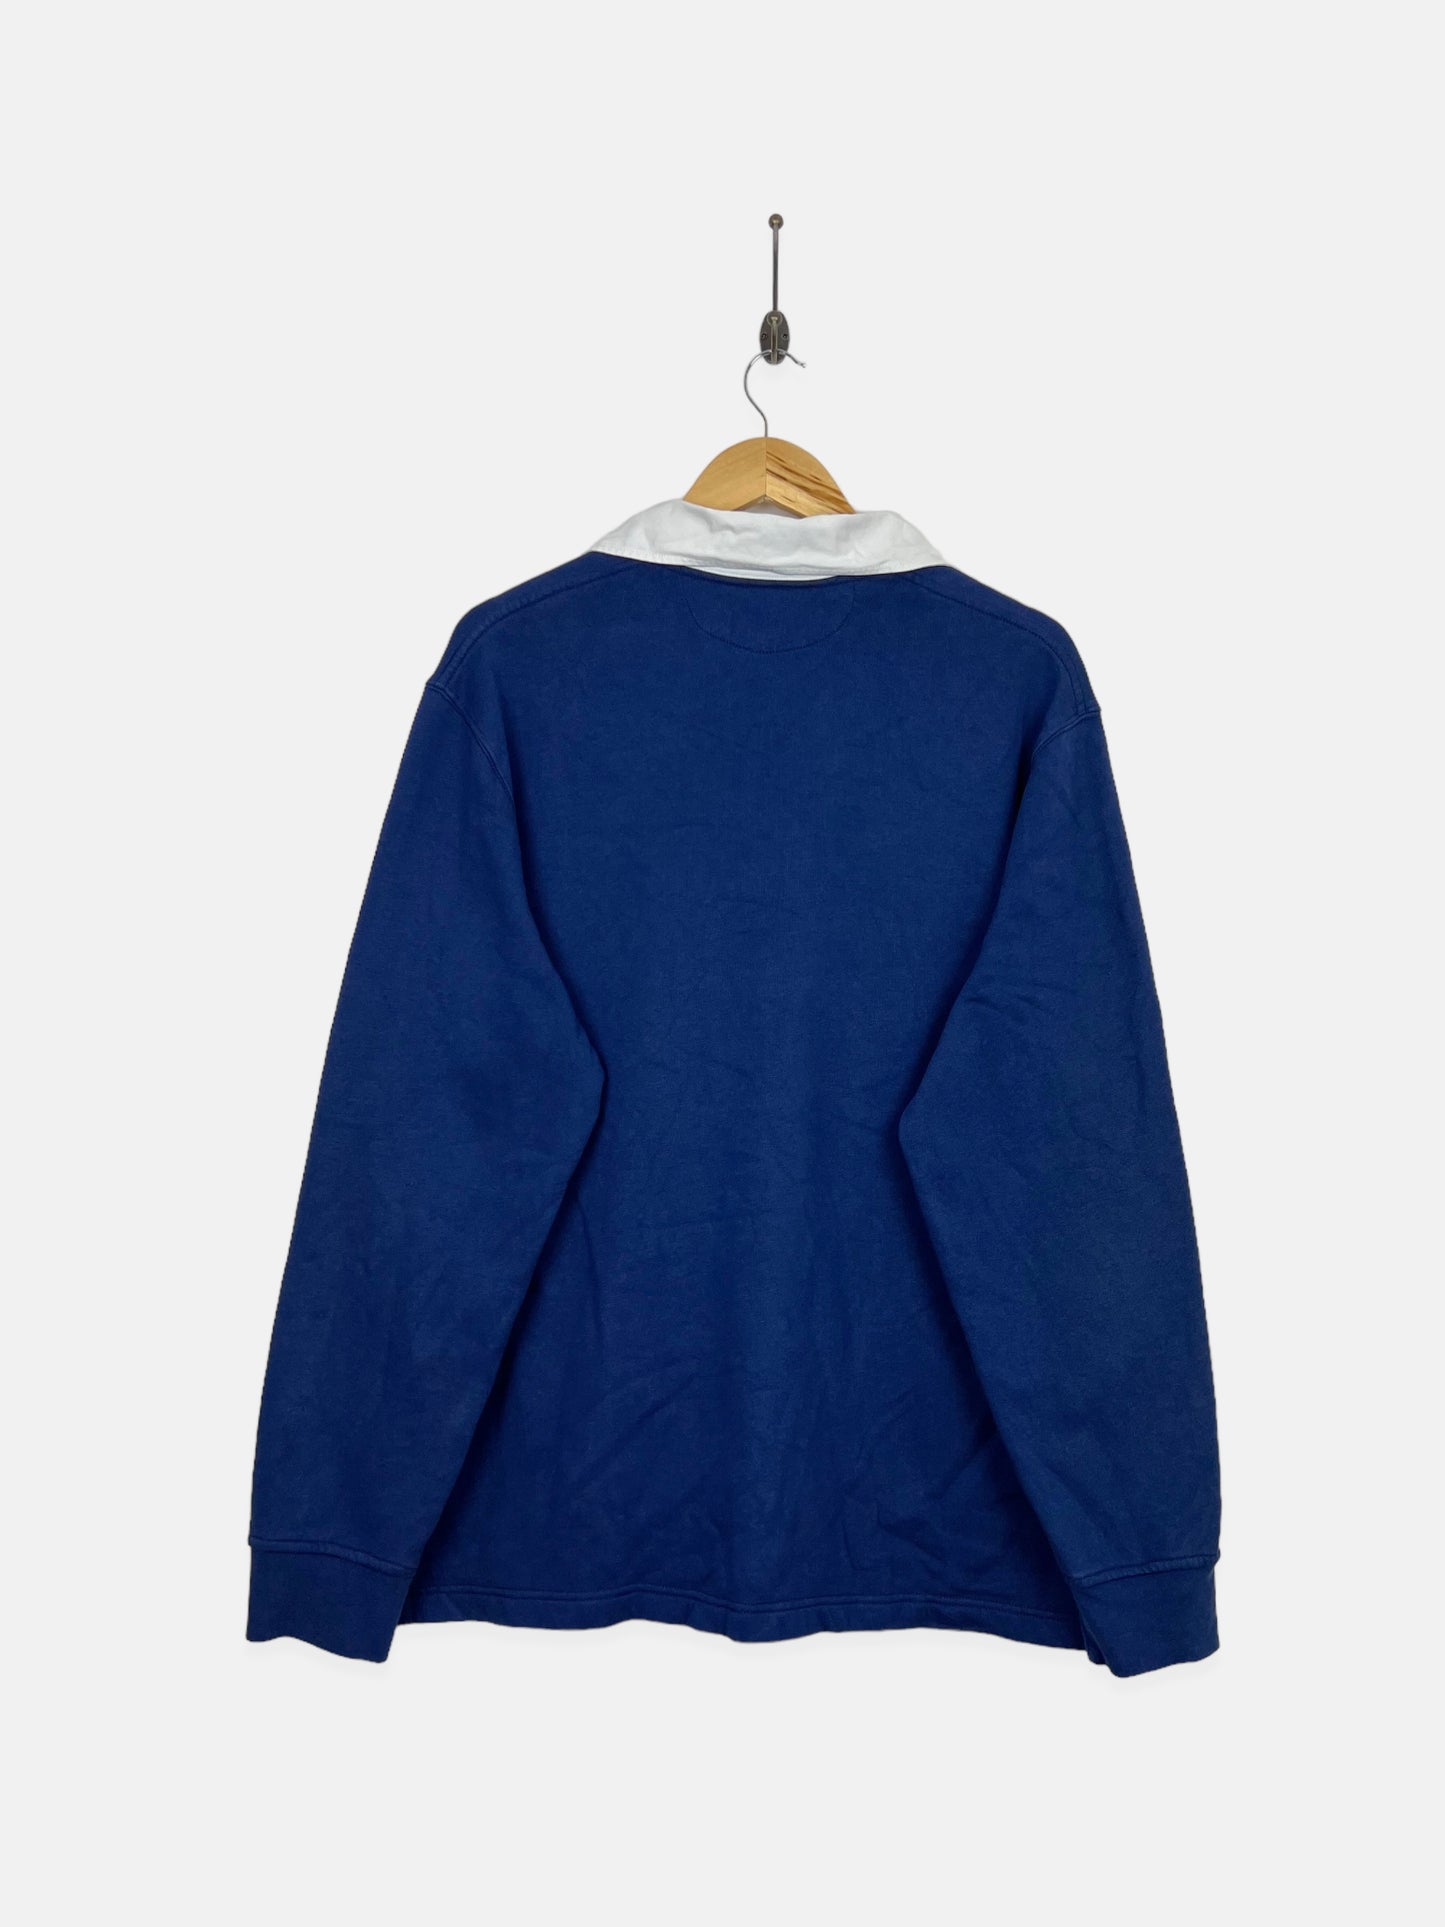 90's Ralph Lauren Embroidered Vintage Collared Sweatshirt Size L-XL